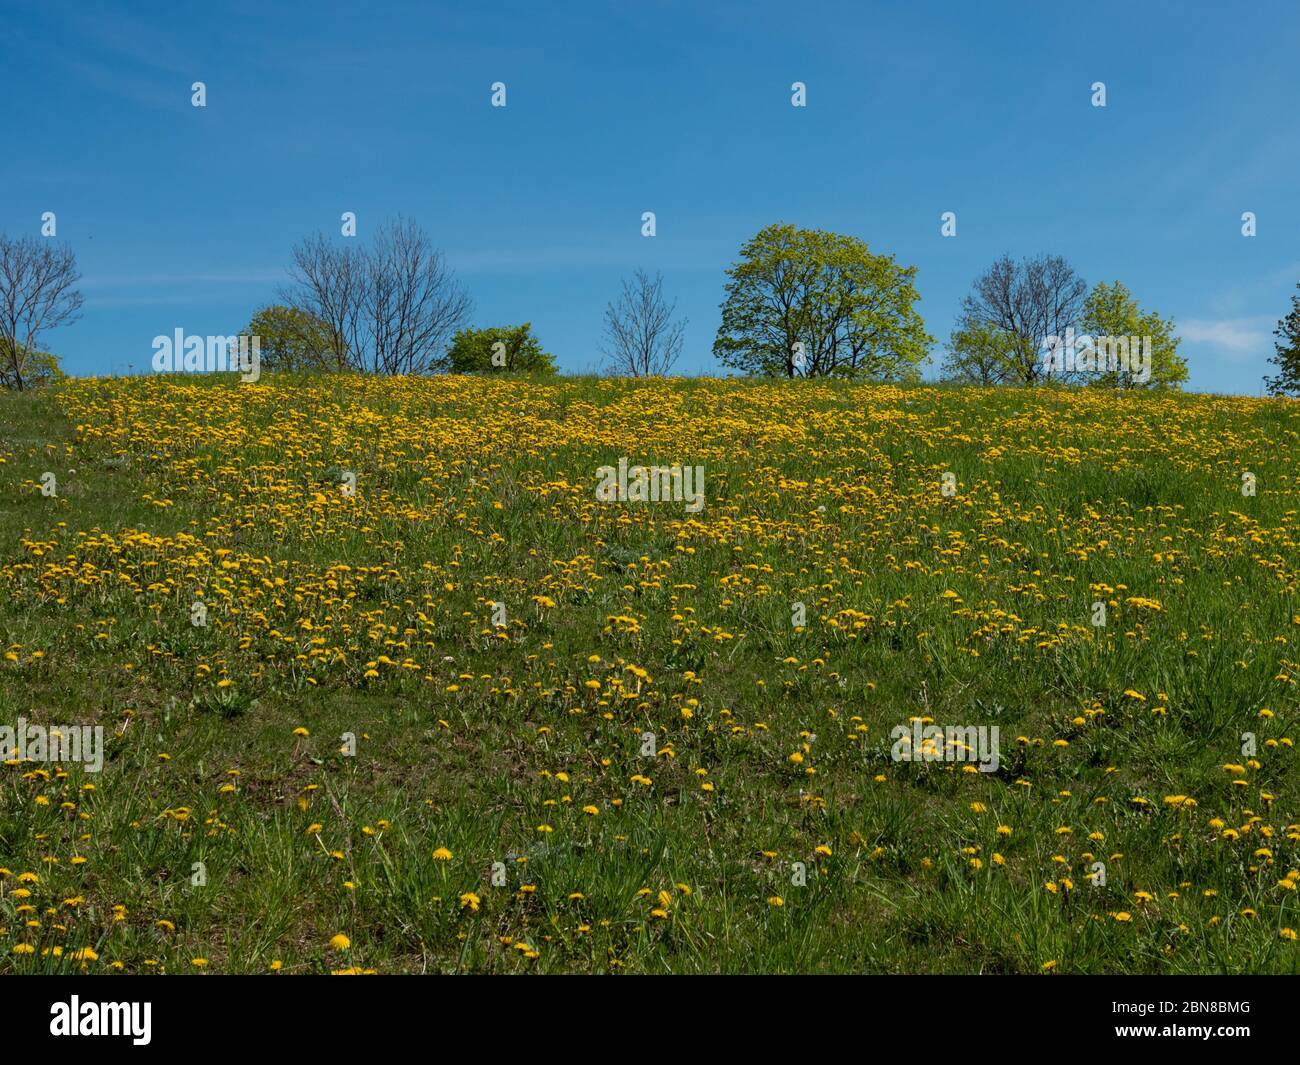 Prairie verte pleine de thisteaux jaunes, fleurs de printemps. Ciel bleu et jour ensoleillé. Parc Suwalski, Podlaskie, Pologne Banque D'Images